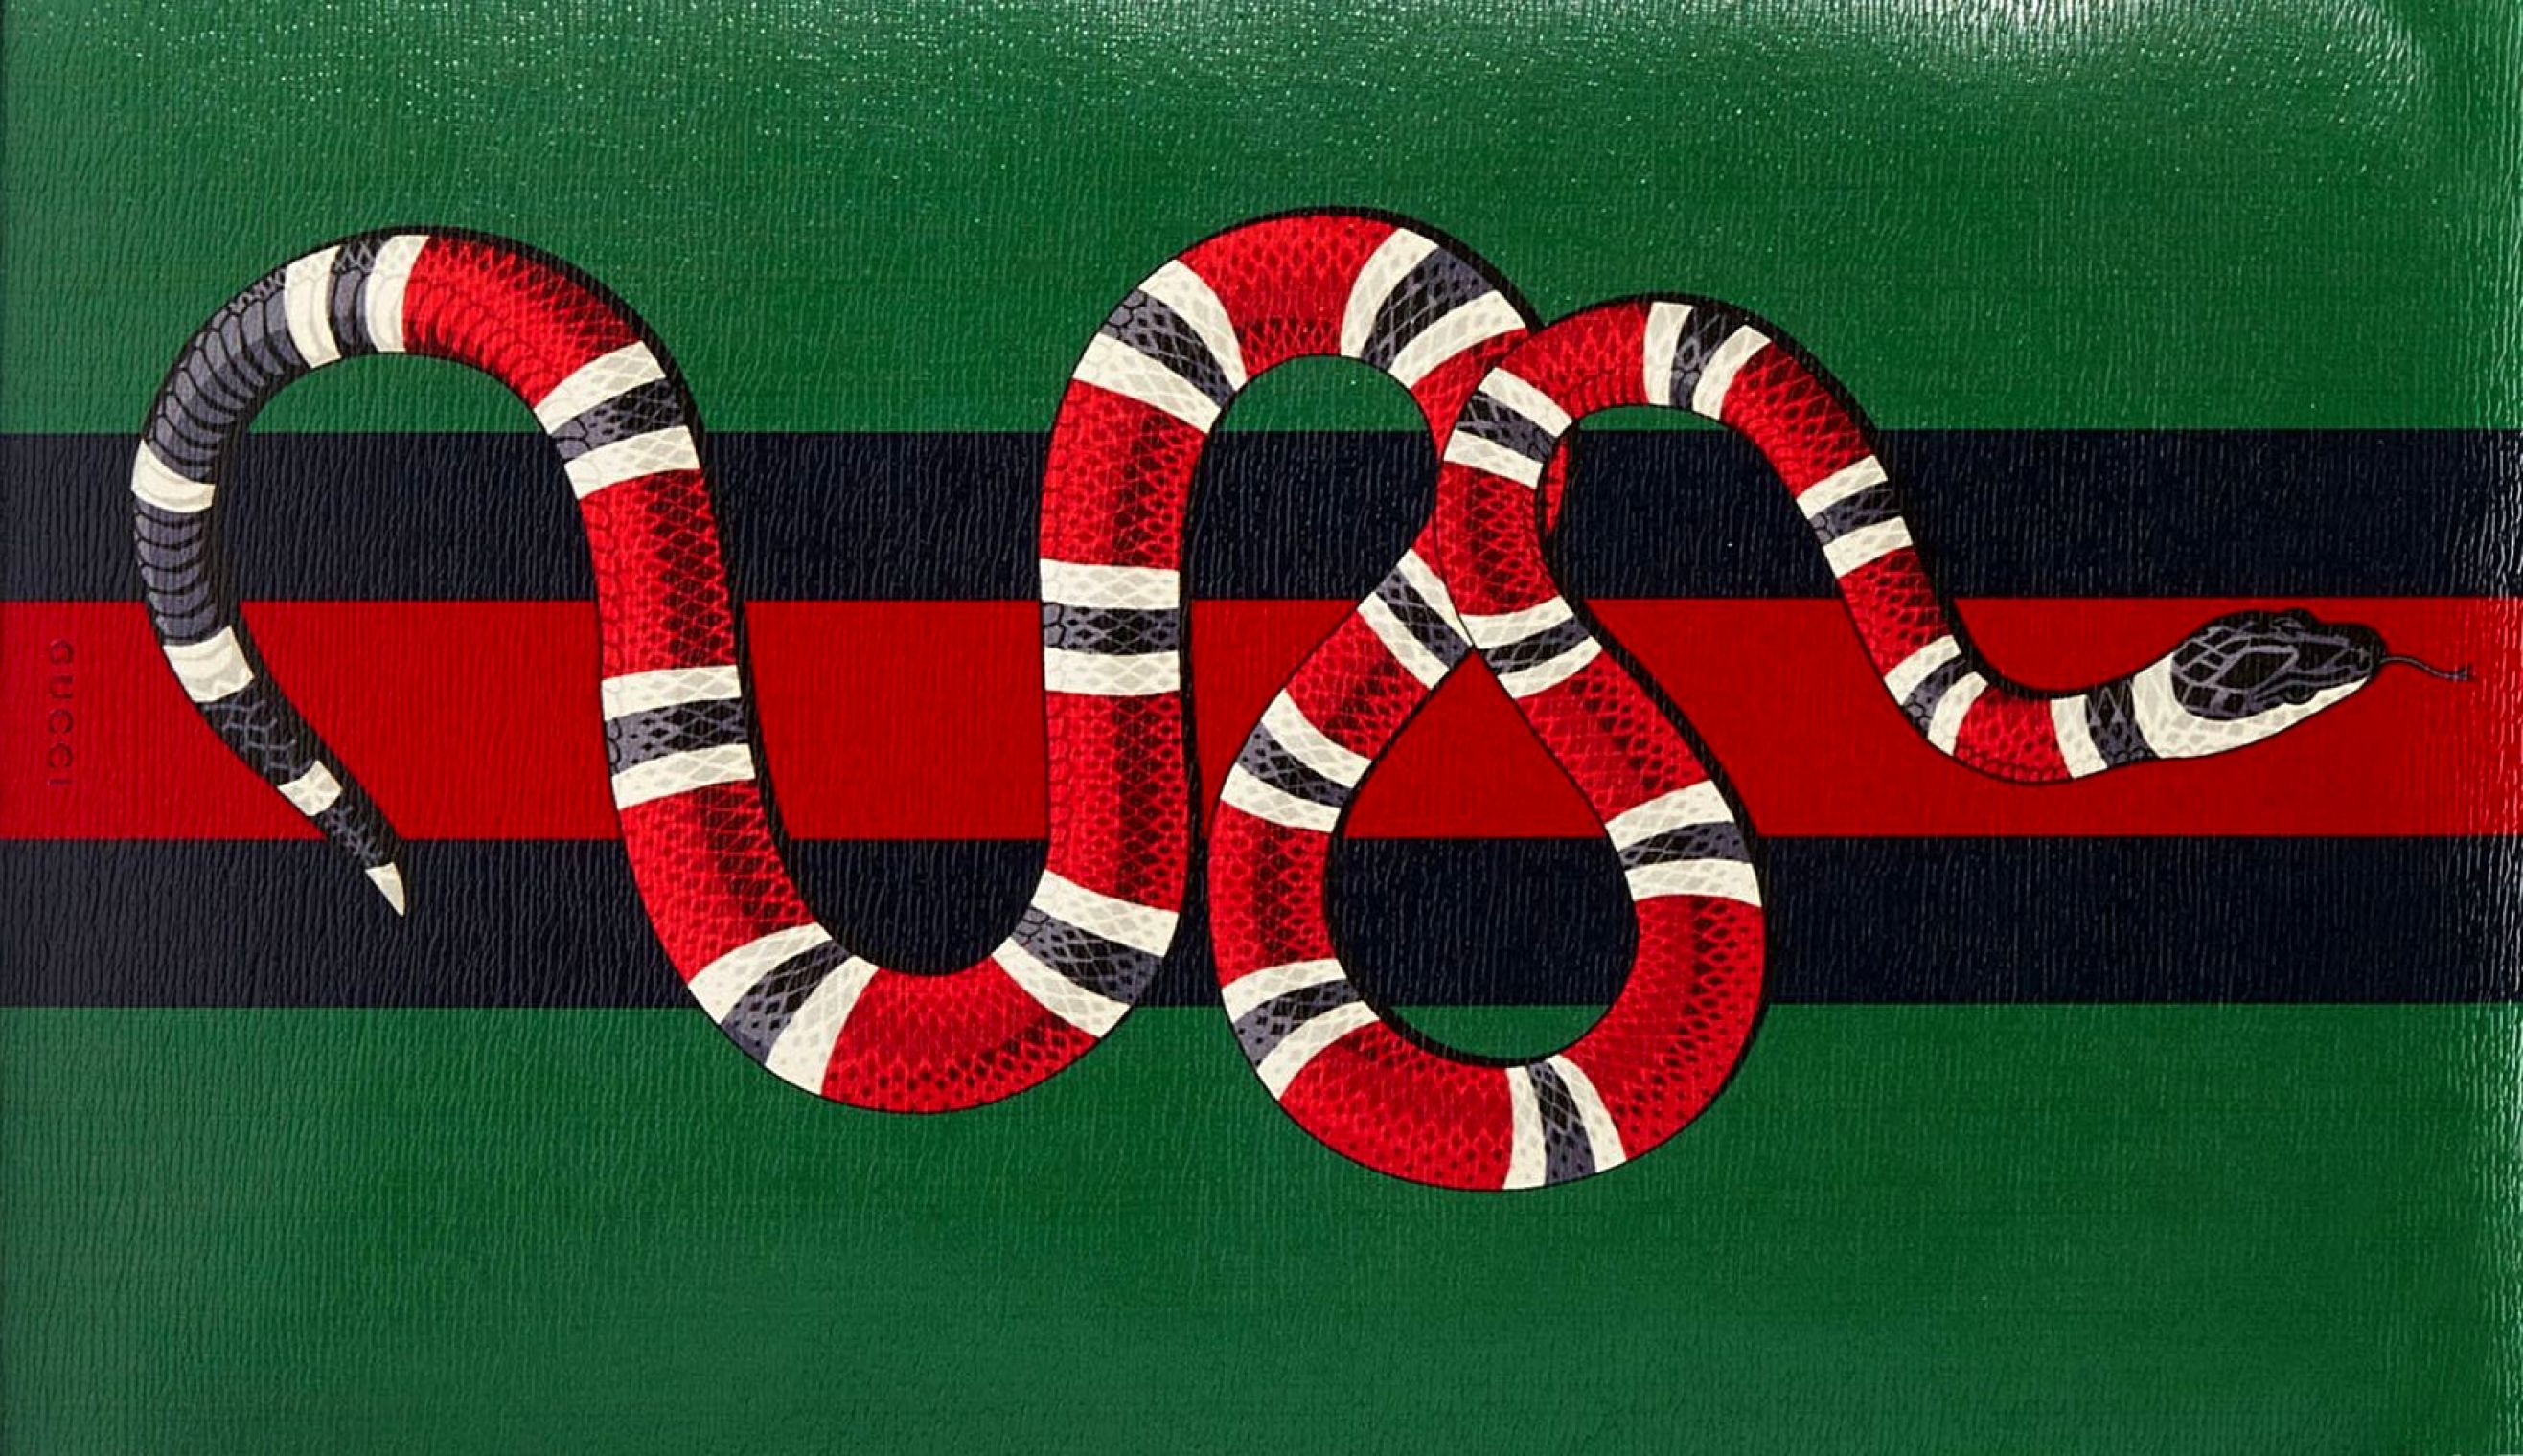 Gucci Змея Обои из архива, новые эстетичные фотки